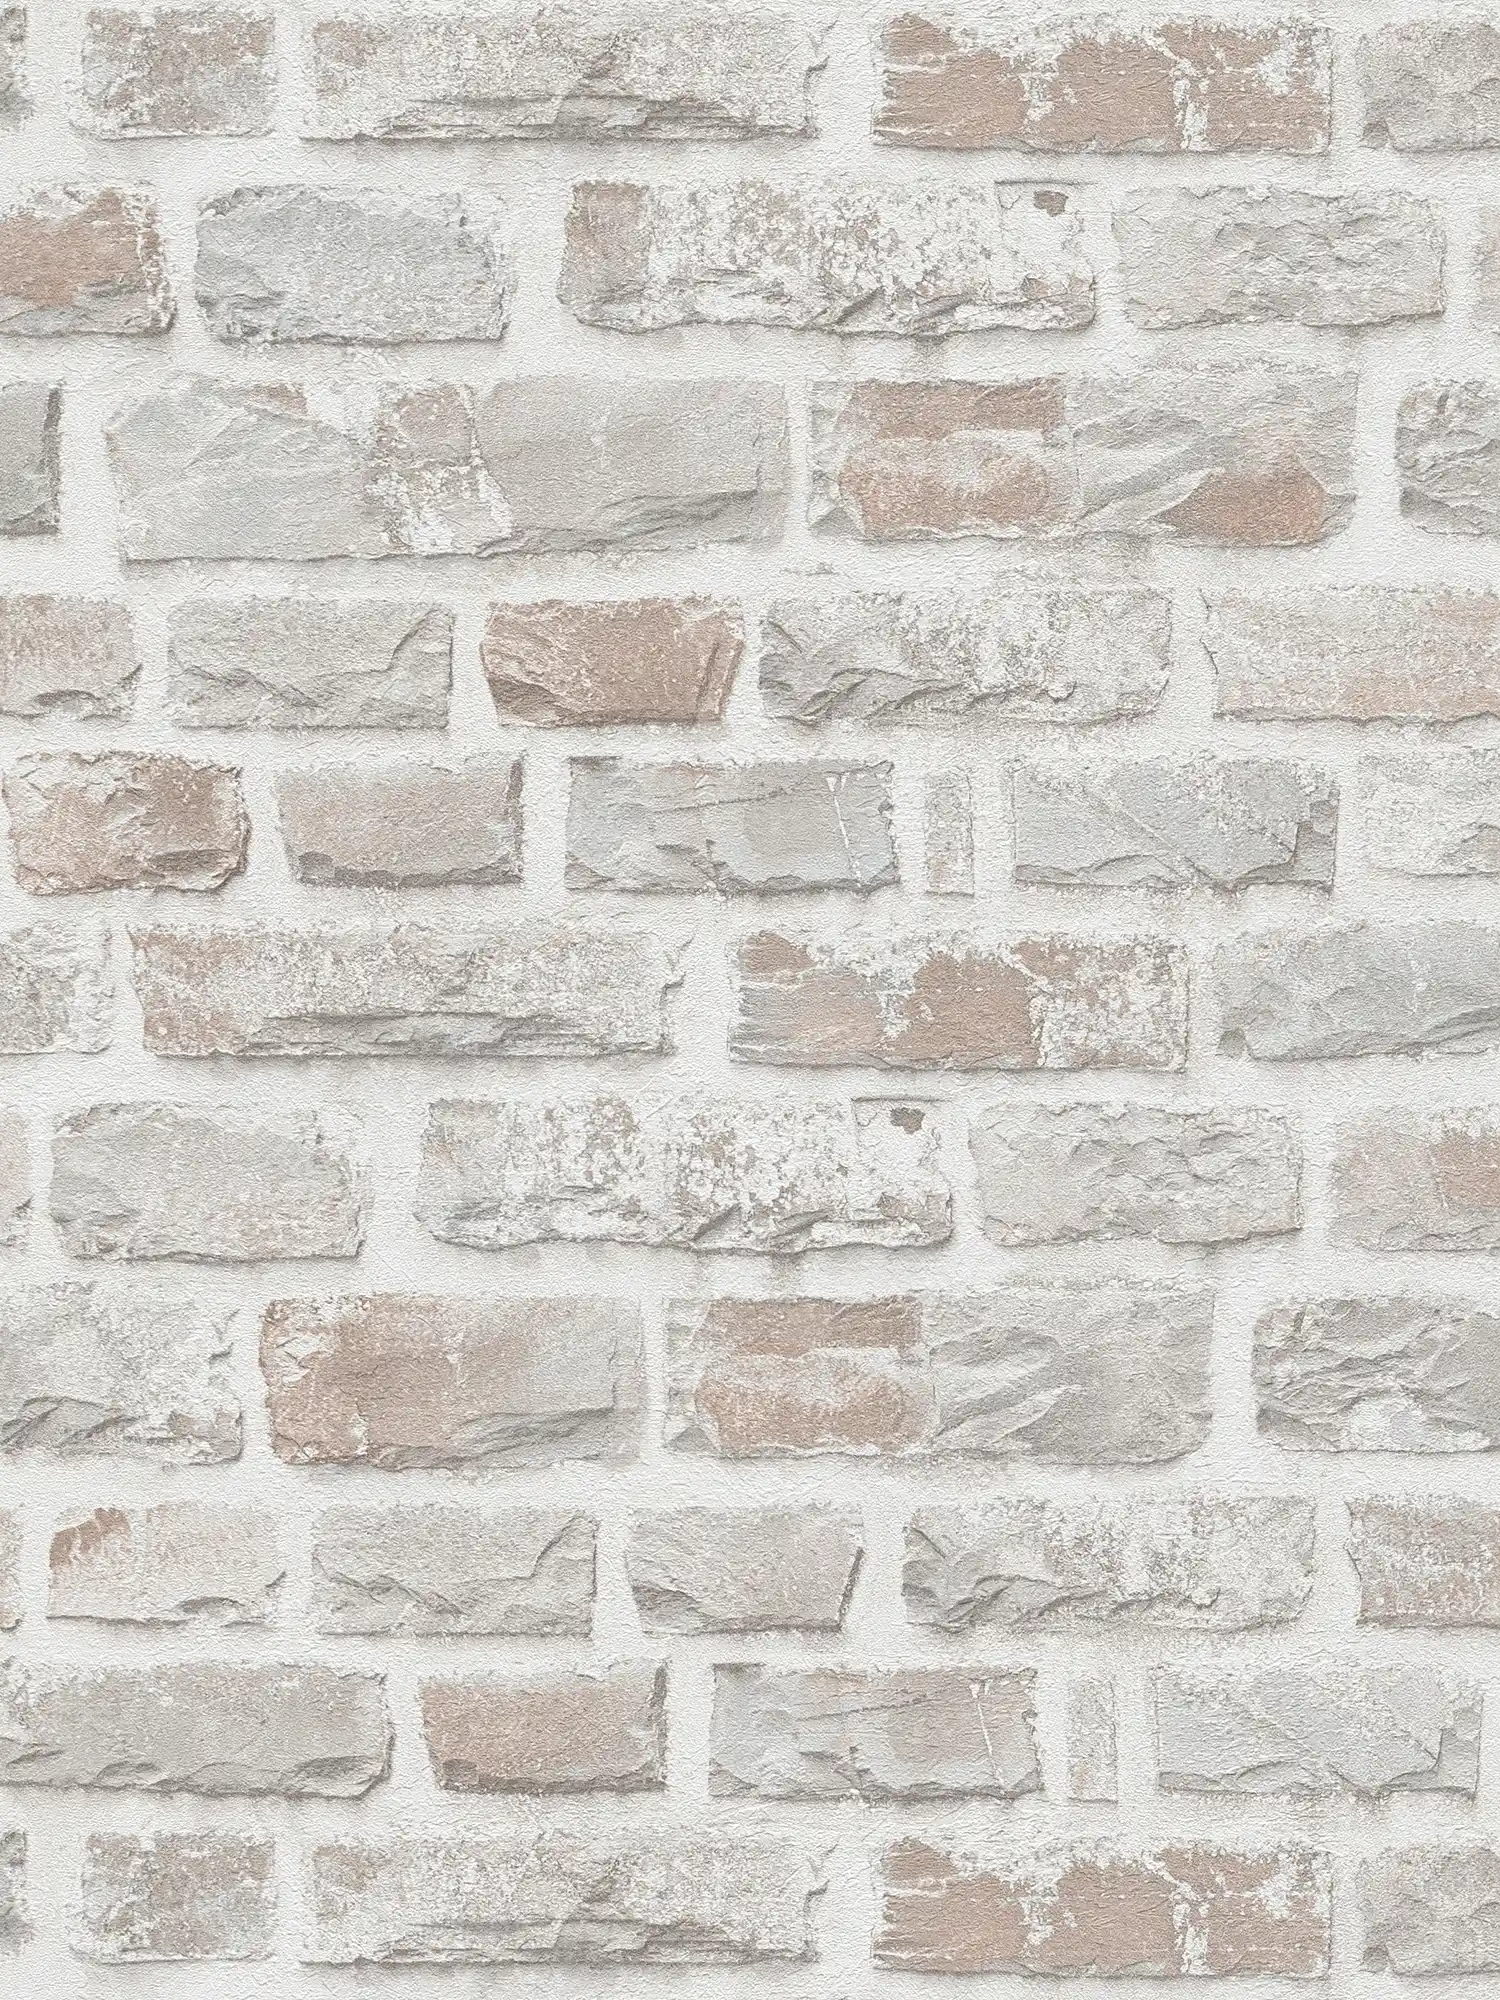 Vliesbehang met natuurstenen muur PVC-vrij - grijs, wit
